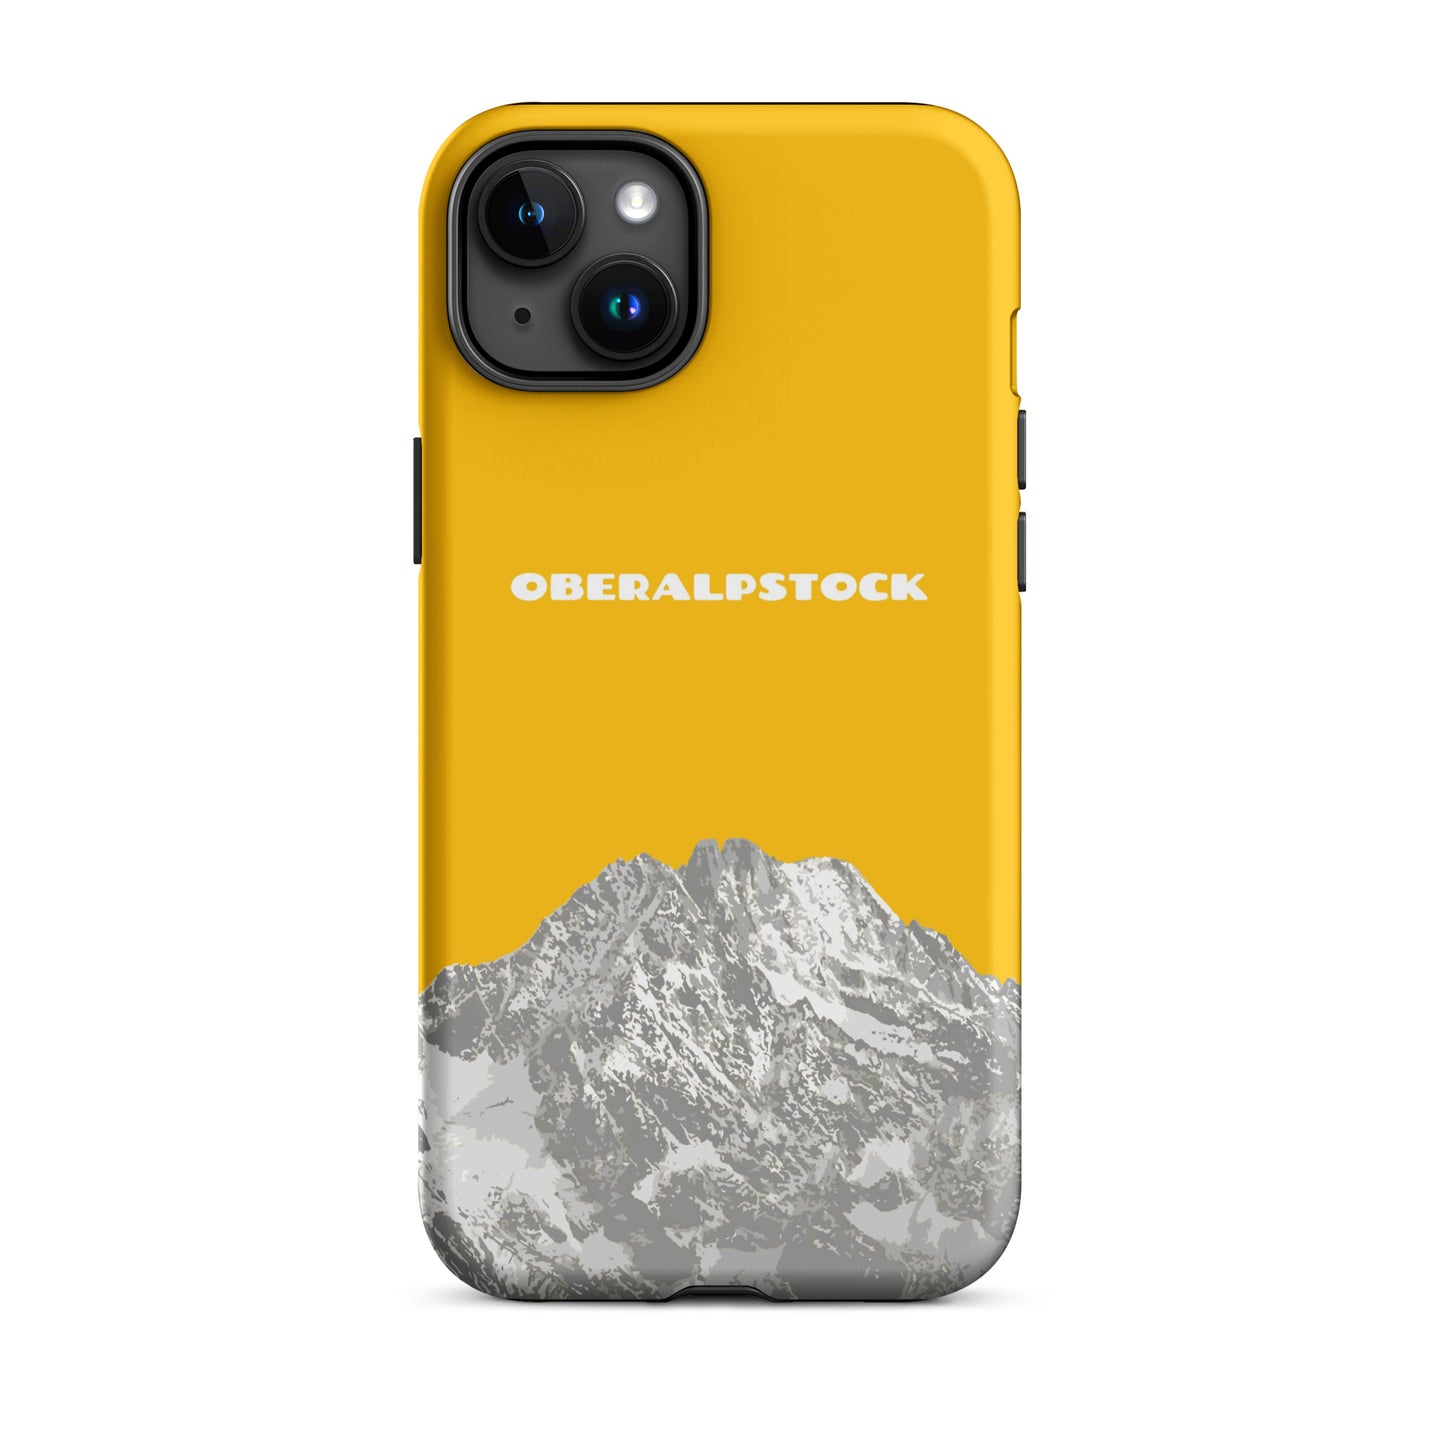 iPhone Case - Oberalpstock- Goldgelb